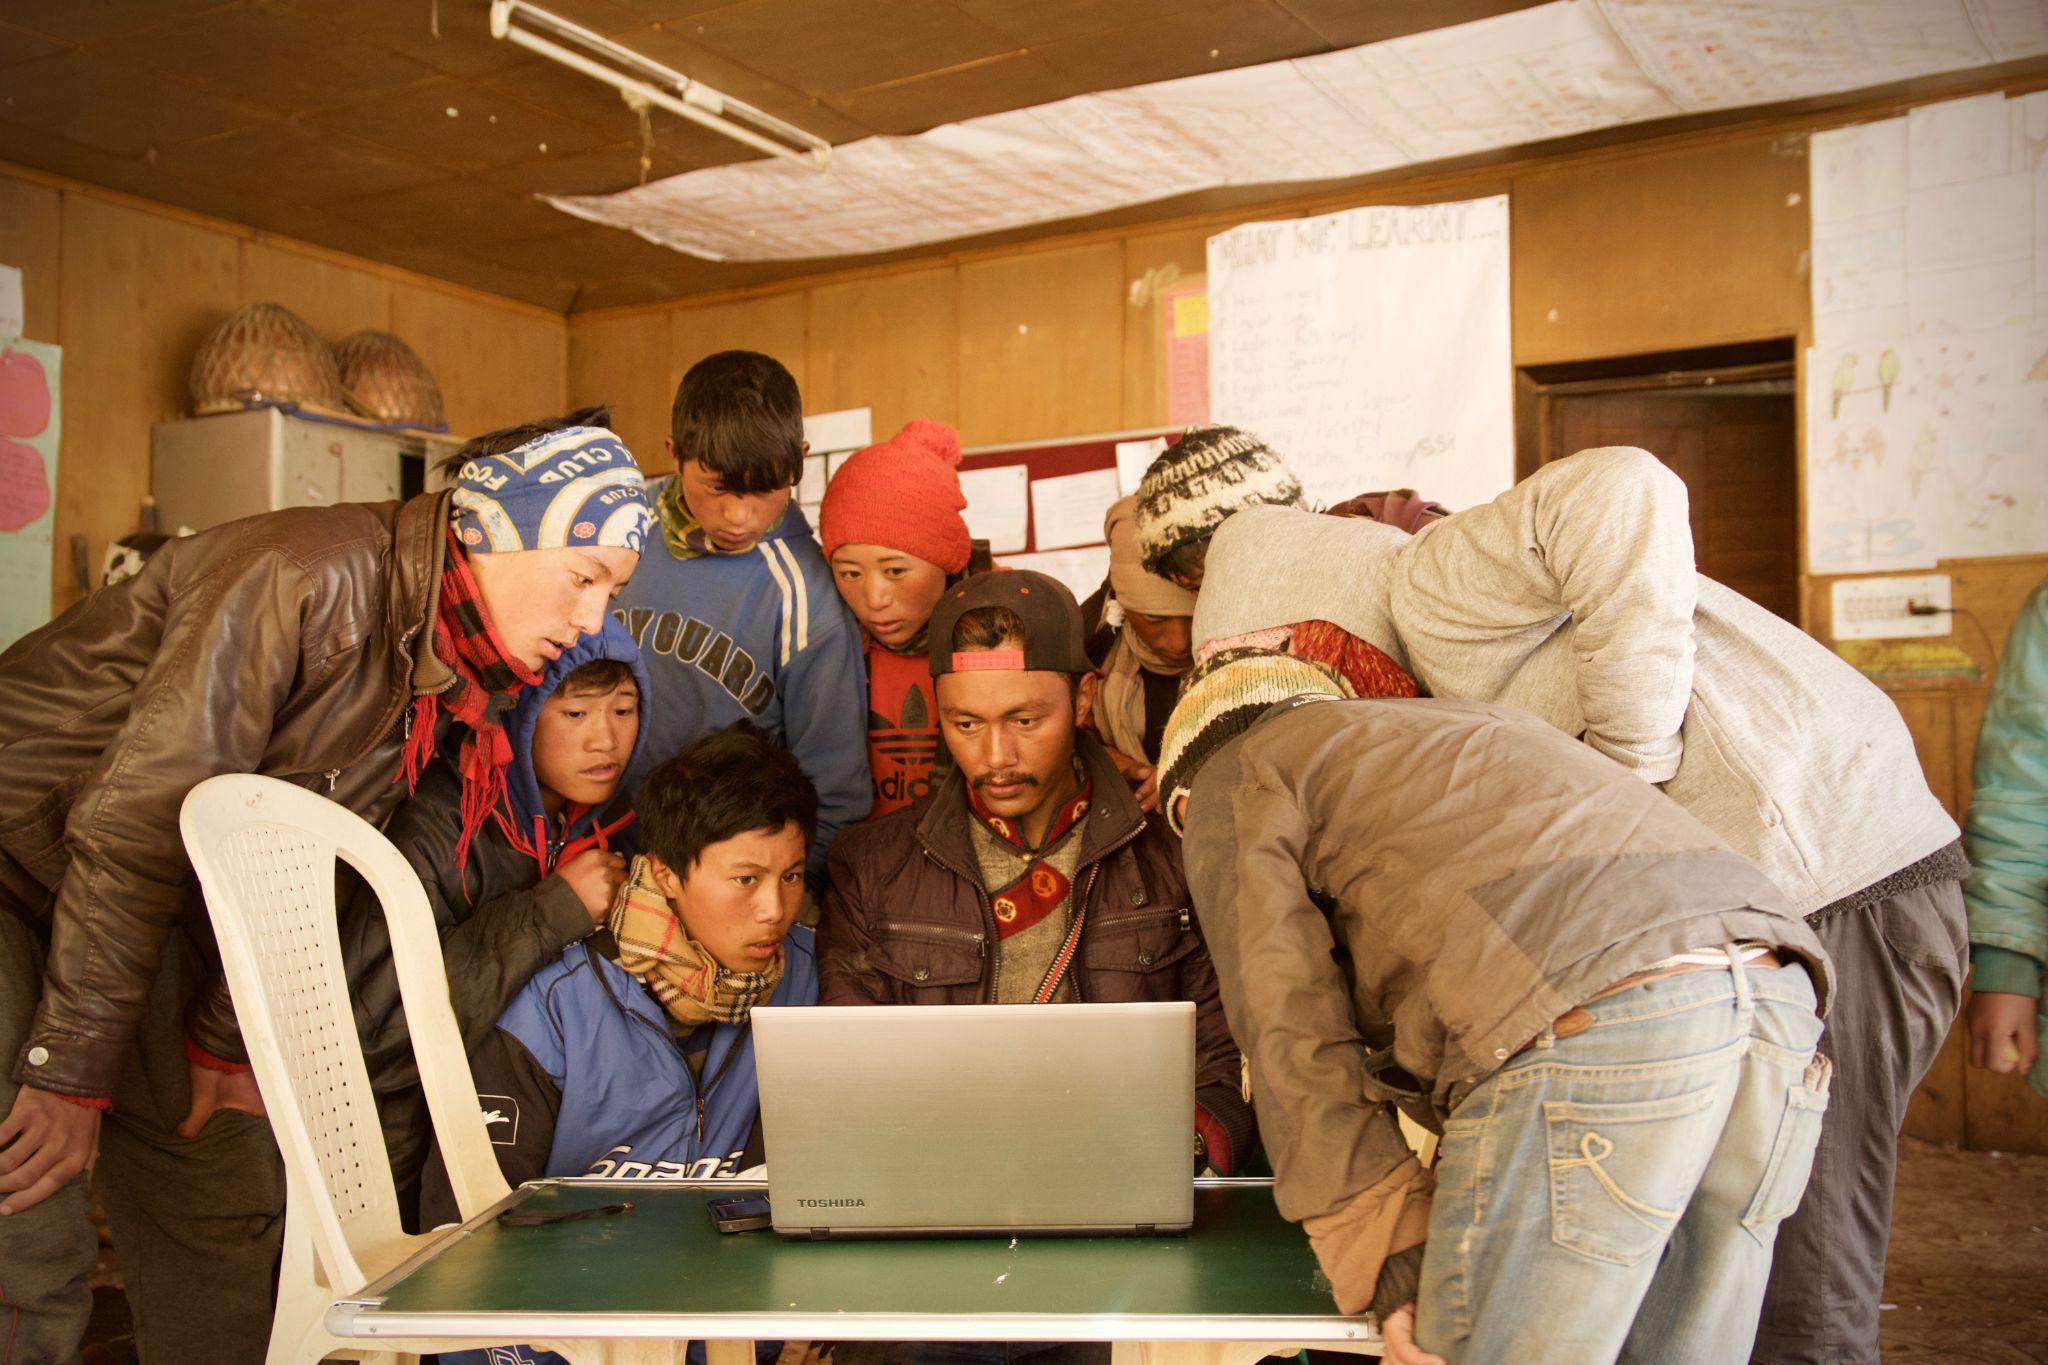 Mọi người tập trung quanh một chiếc máy tính xách tay đang đứng trên một chiếc bàn đơn giản với một chiếc ghế nhựa ở bên trái. Phông nền trông giống một ngôi trường ở một quốc gia đang phát triển.